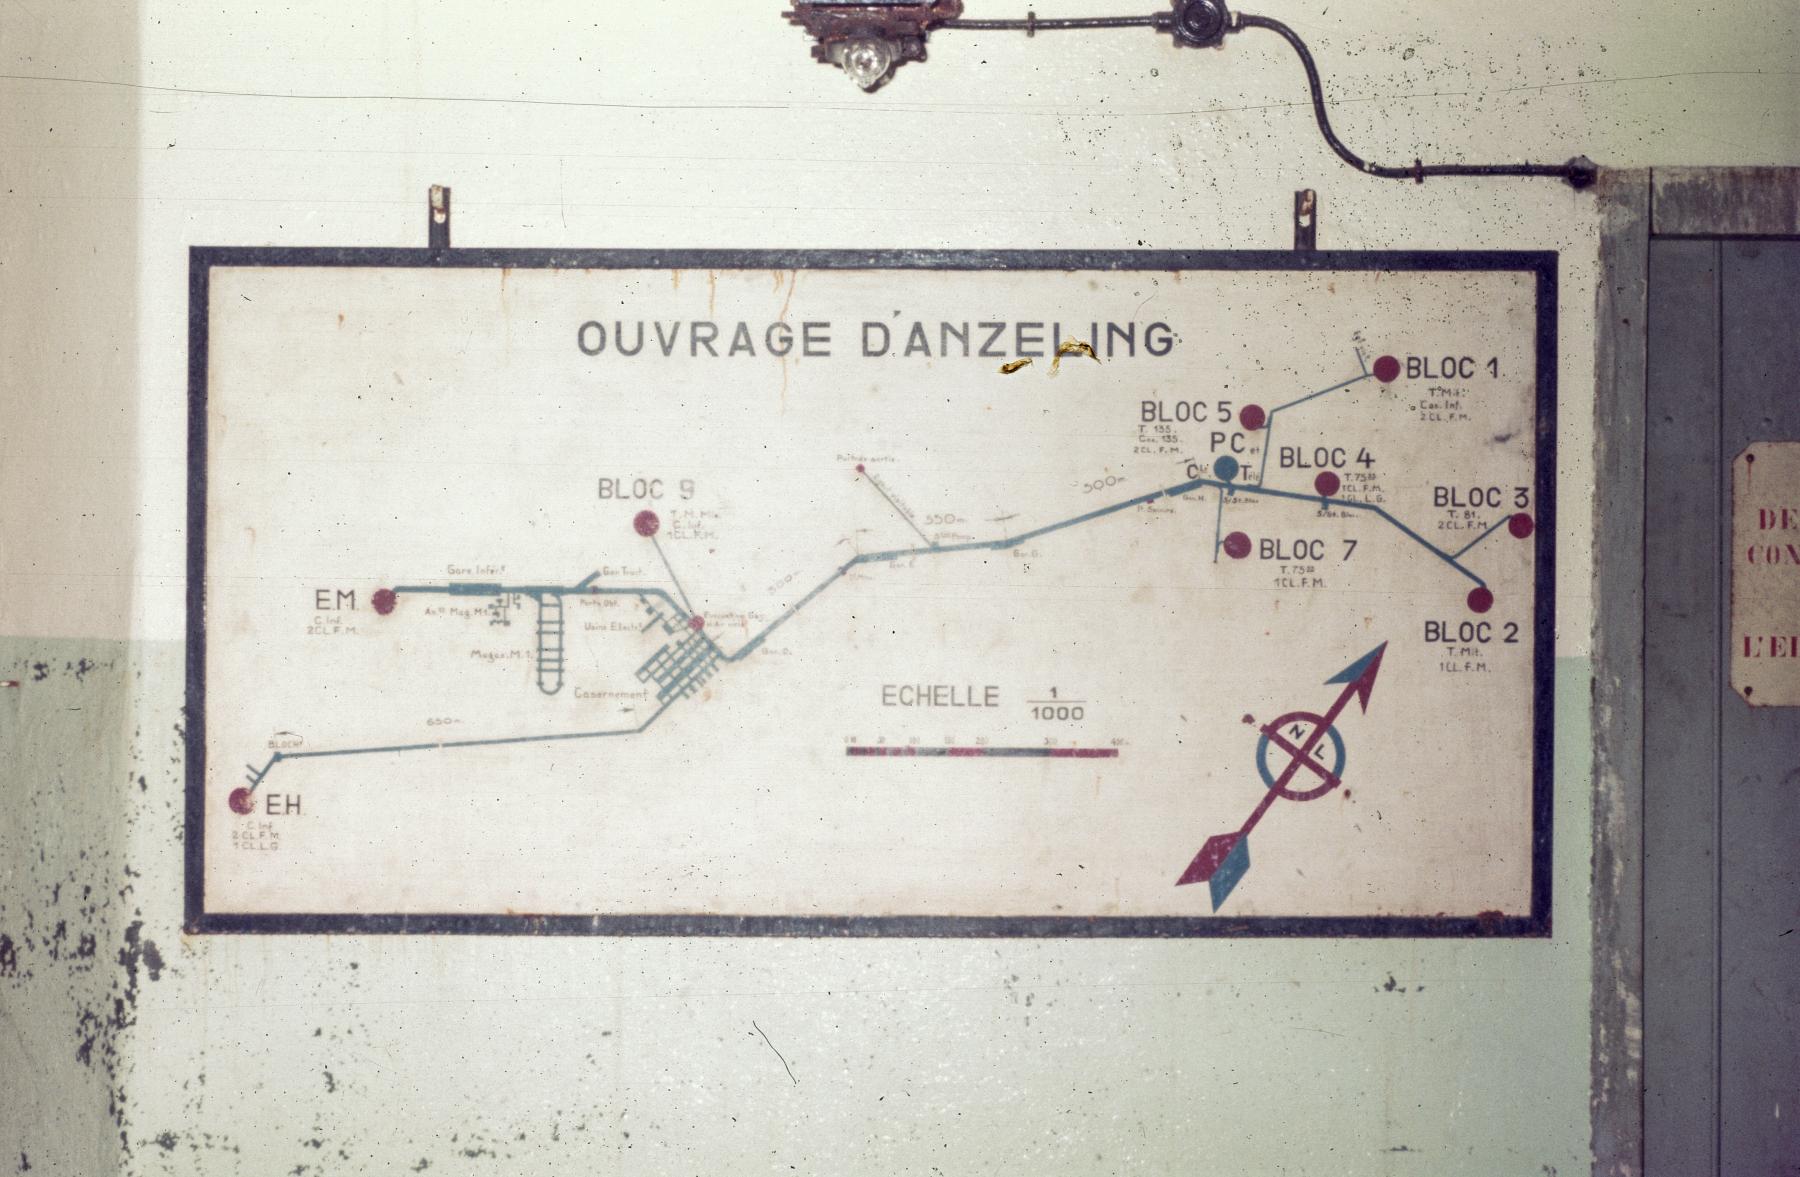 Ligne Maginot - ANZELING - A25 - (Ouvrage d'artillerie) - Entrée munitions
Plan de l'ouvrage